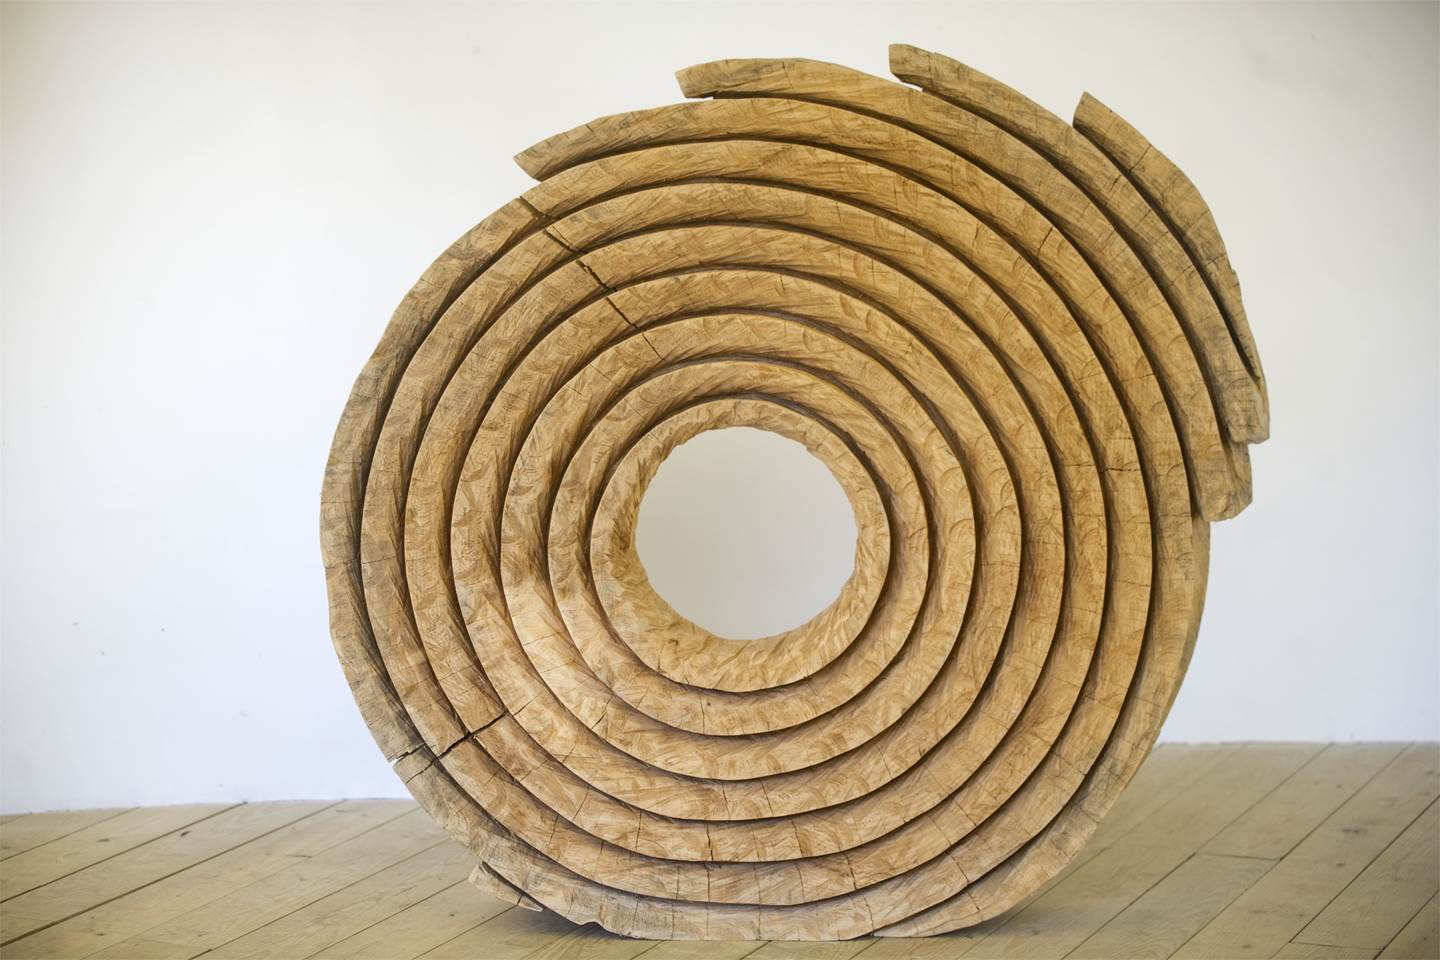 Série Anéis, original La nature Bois Sculpture par Paulo Neves